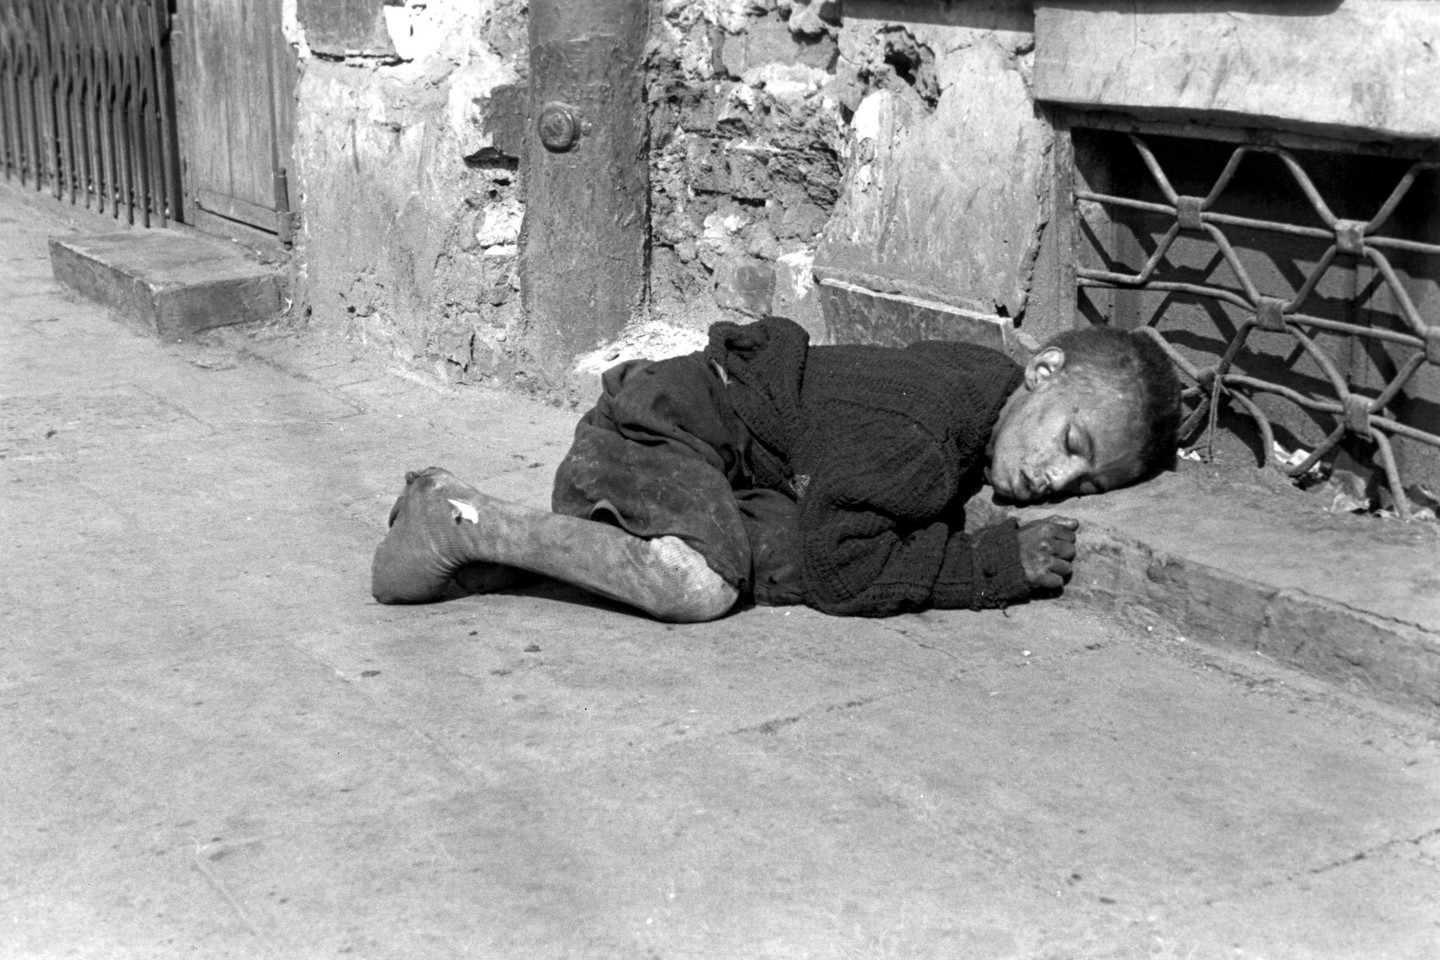 Net ir vaikų gyvenimas žydų getuose buvo siaubingas.